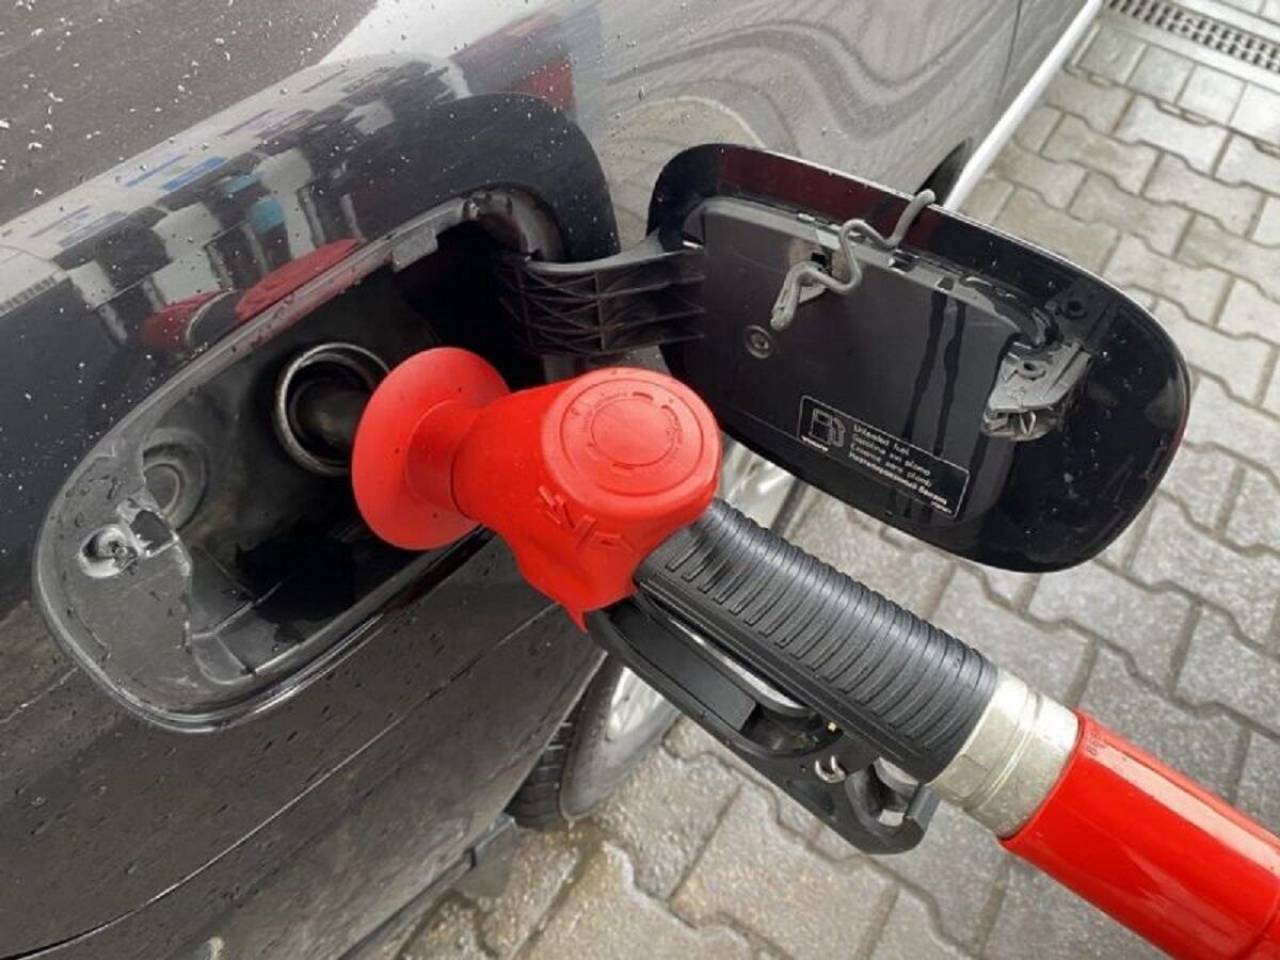 C начала года +30 копеек за литр: в Беларуси снова дорожает топливо